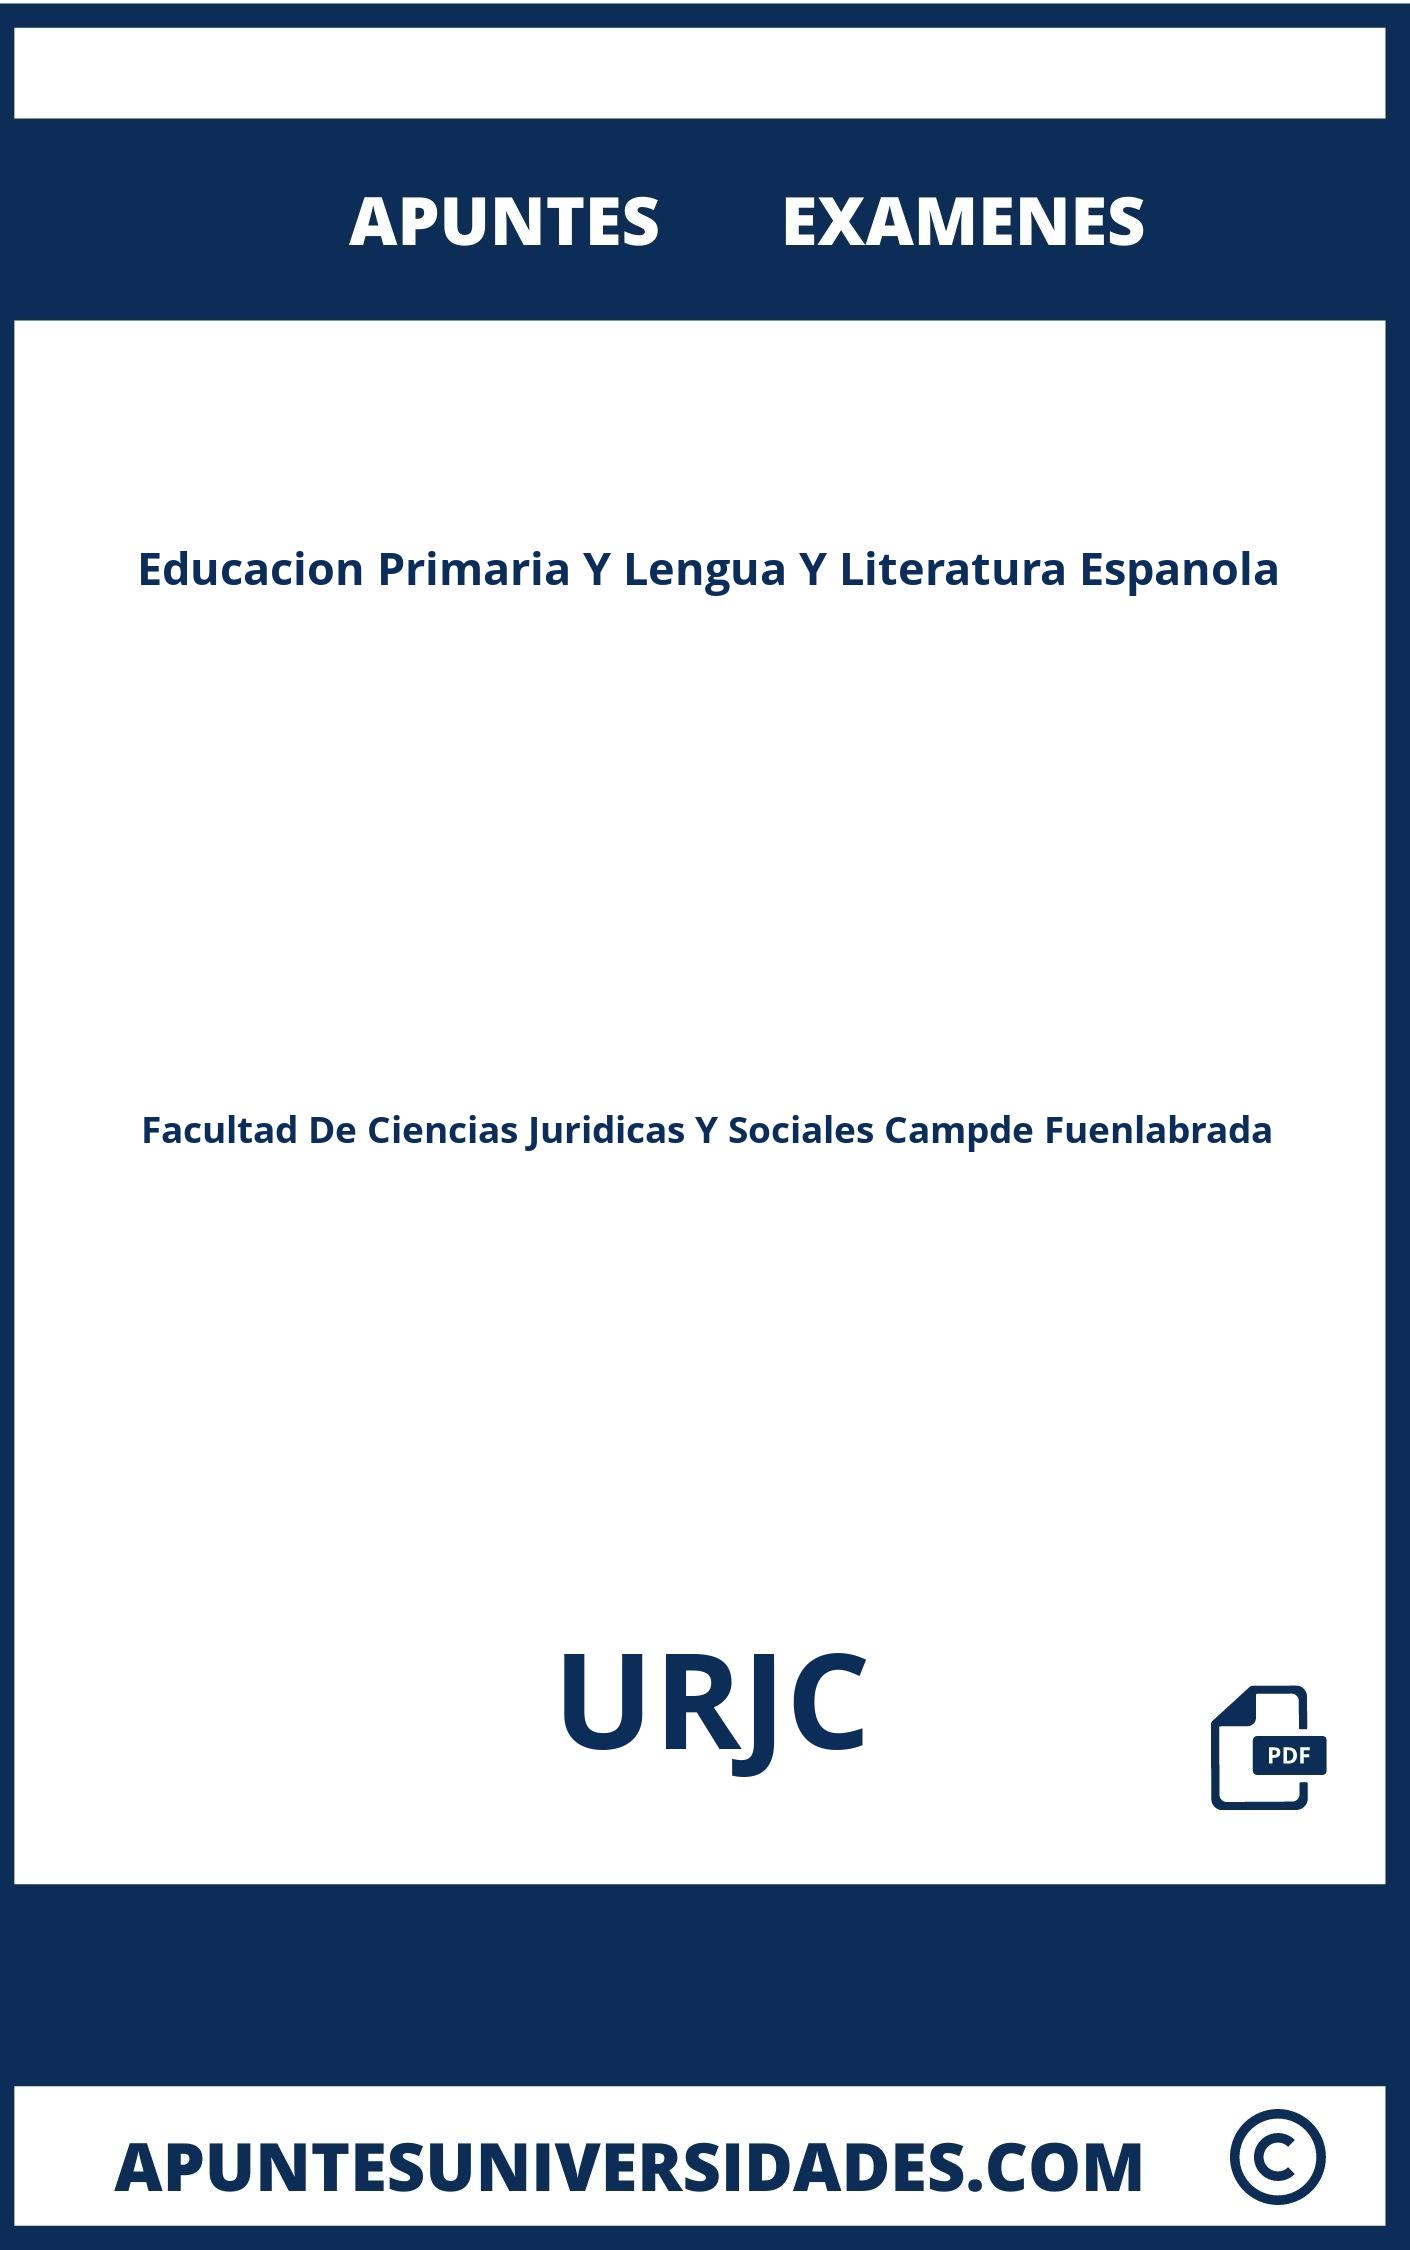 Apuntes y Examenes Educacion Primaria Y Lengua Y Literatura Espanola URJC